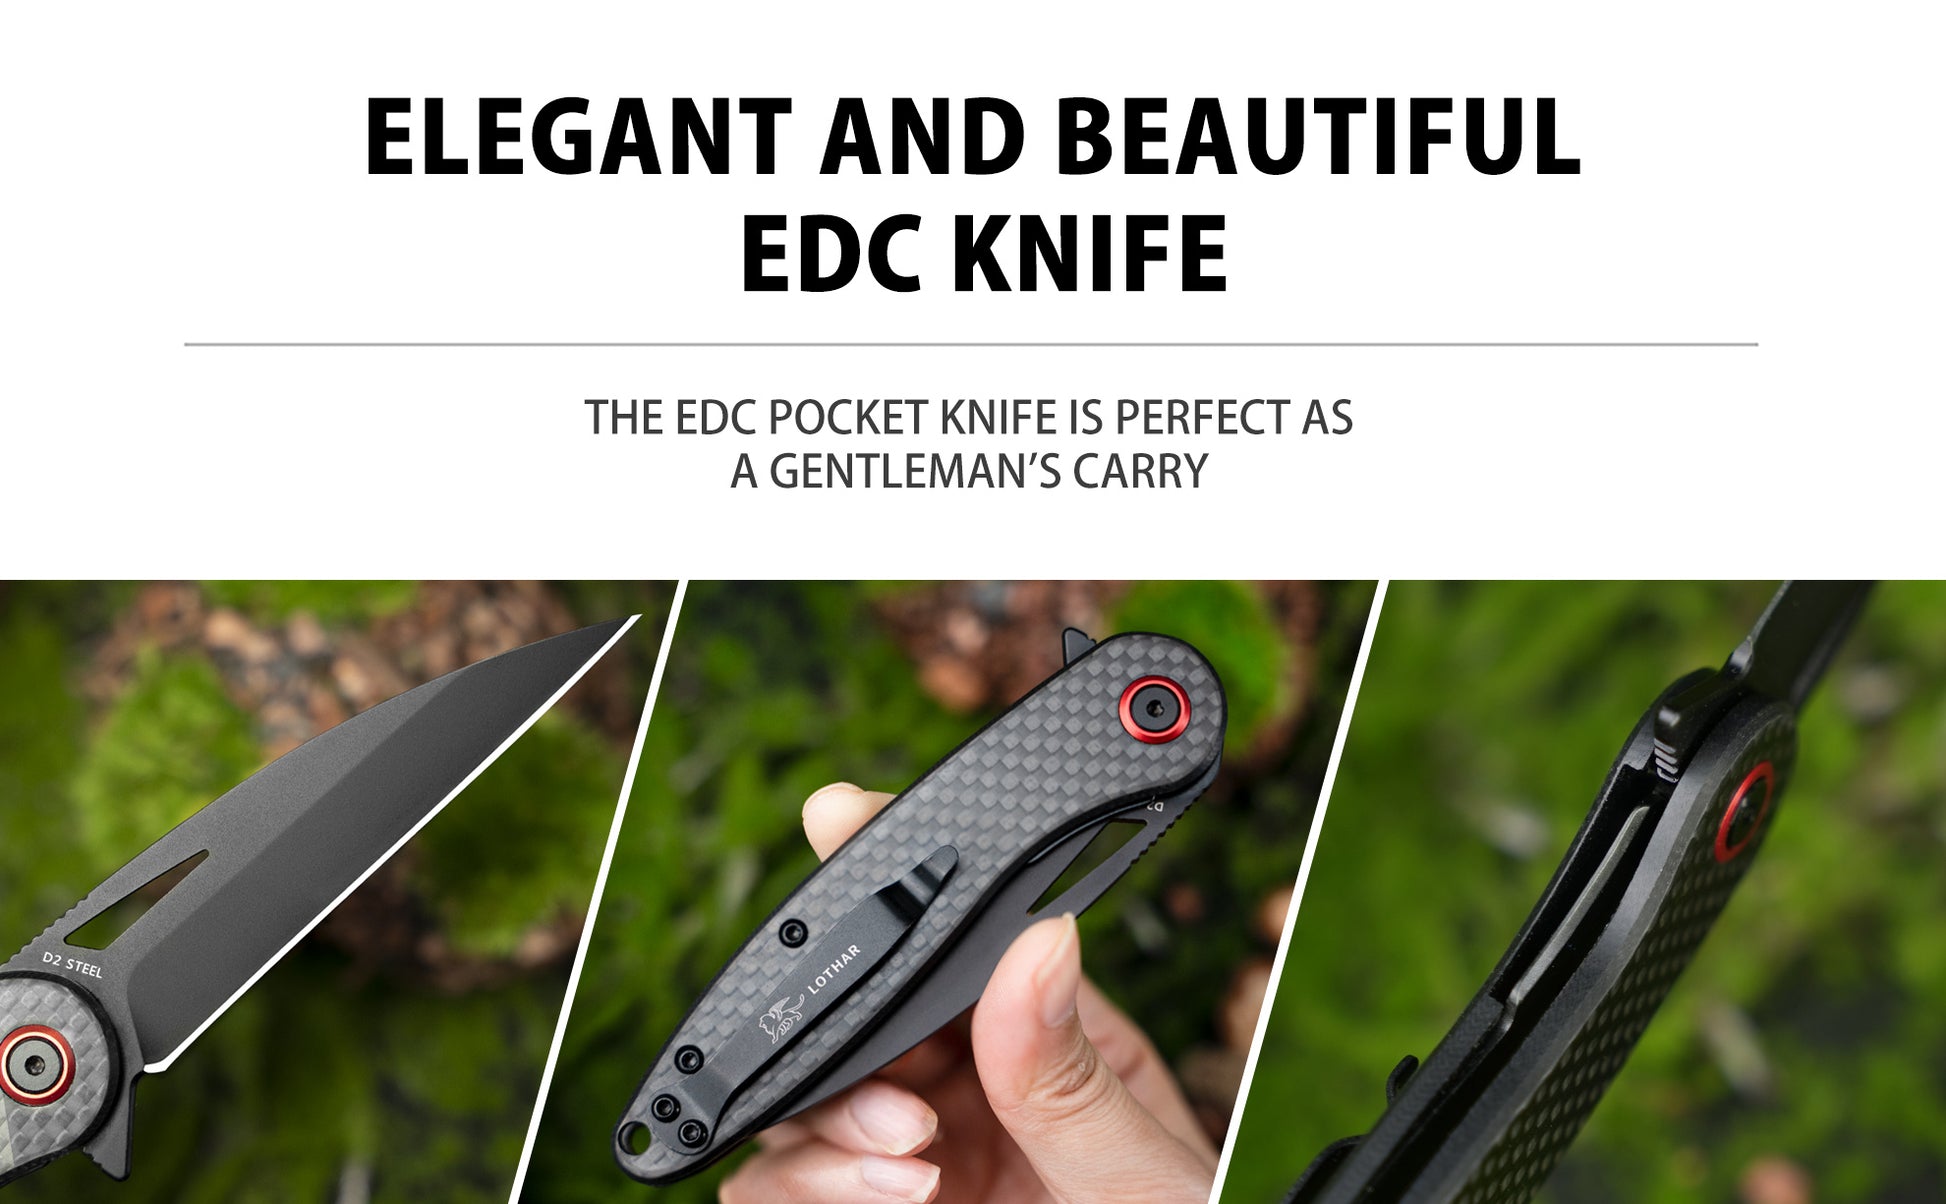 LOTHAR Seagull Pocket Knife, 3" D2 Steel Blade EDC Knife, Carbon fiber Handle, 2.3oz Weight, Liner Lock